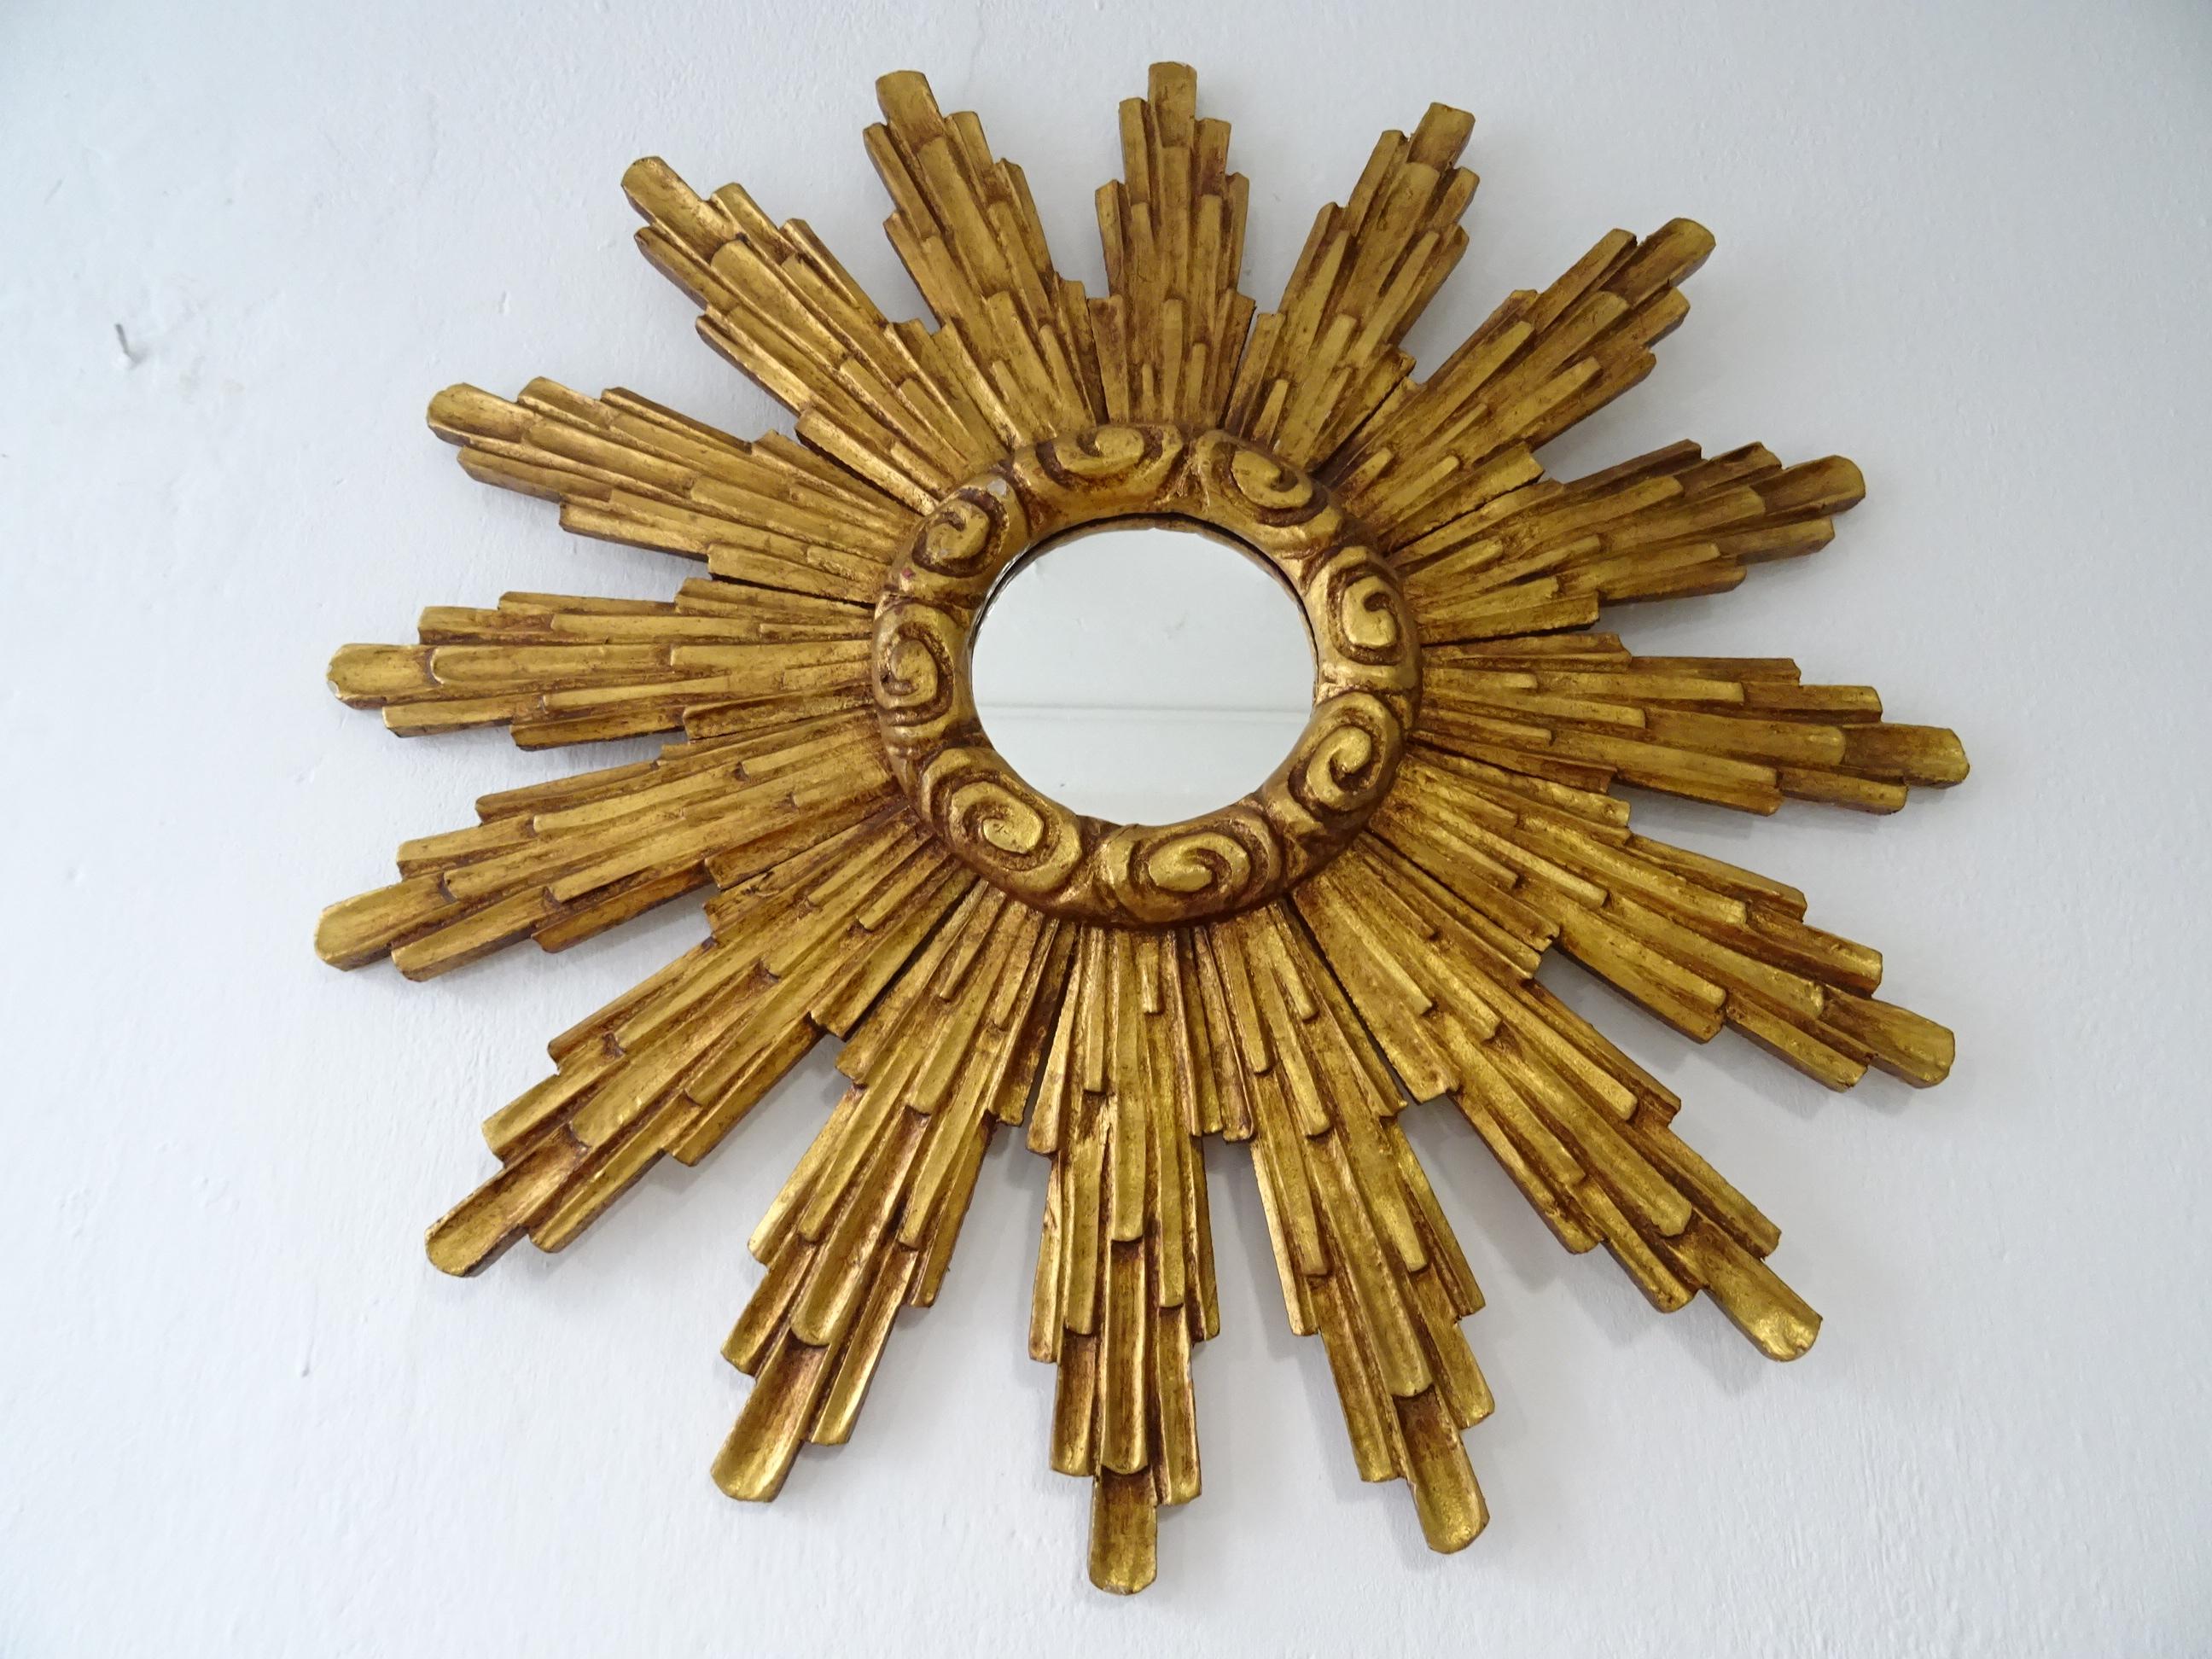 Schöne große Französisch Holz Gold Starburst. Erstaunliche Patina. Goldholz mit Spiegel in perfektem Zustand. Der Spiegel selbst misst 5 Zoll rund. Das Holz ist ein wenig gewölbt, so dass der Spiegel etwas mehr hervorsticht als das Ende der